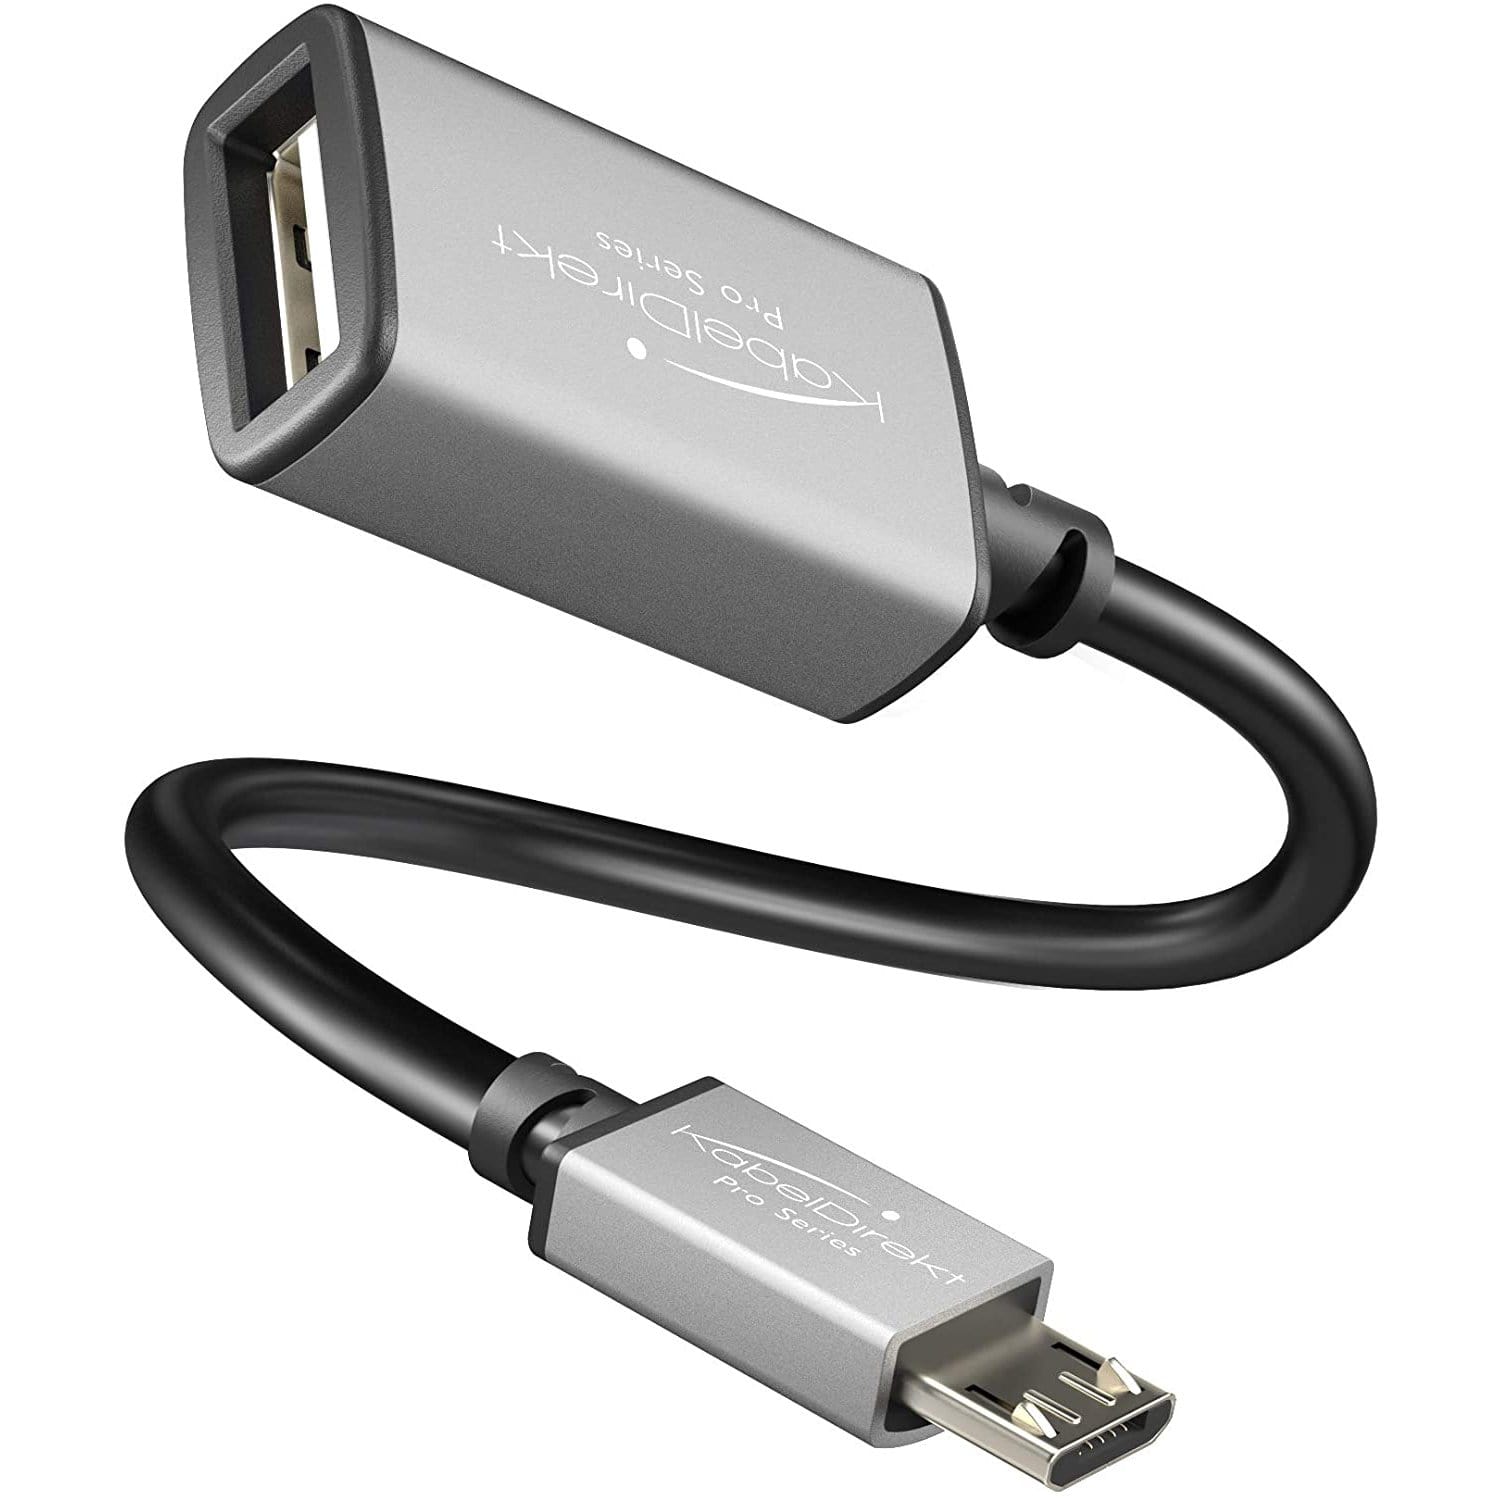 mærke Encyclopedia længes efter Micro USB OTG adapter – Connect USB devices with your tablet or phone –  KabelDirekt